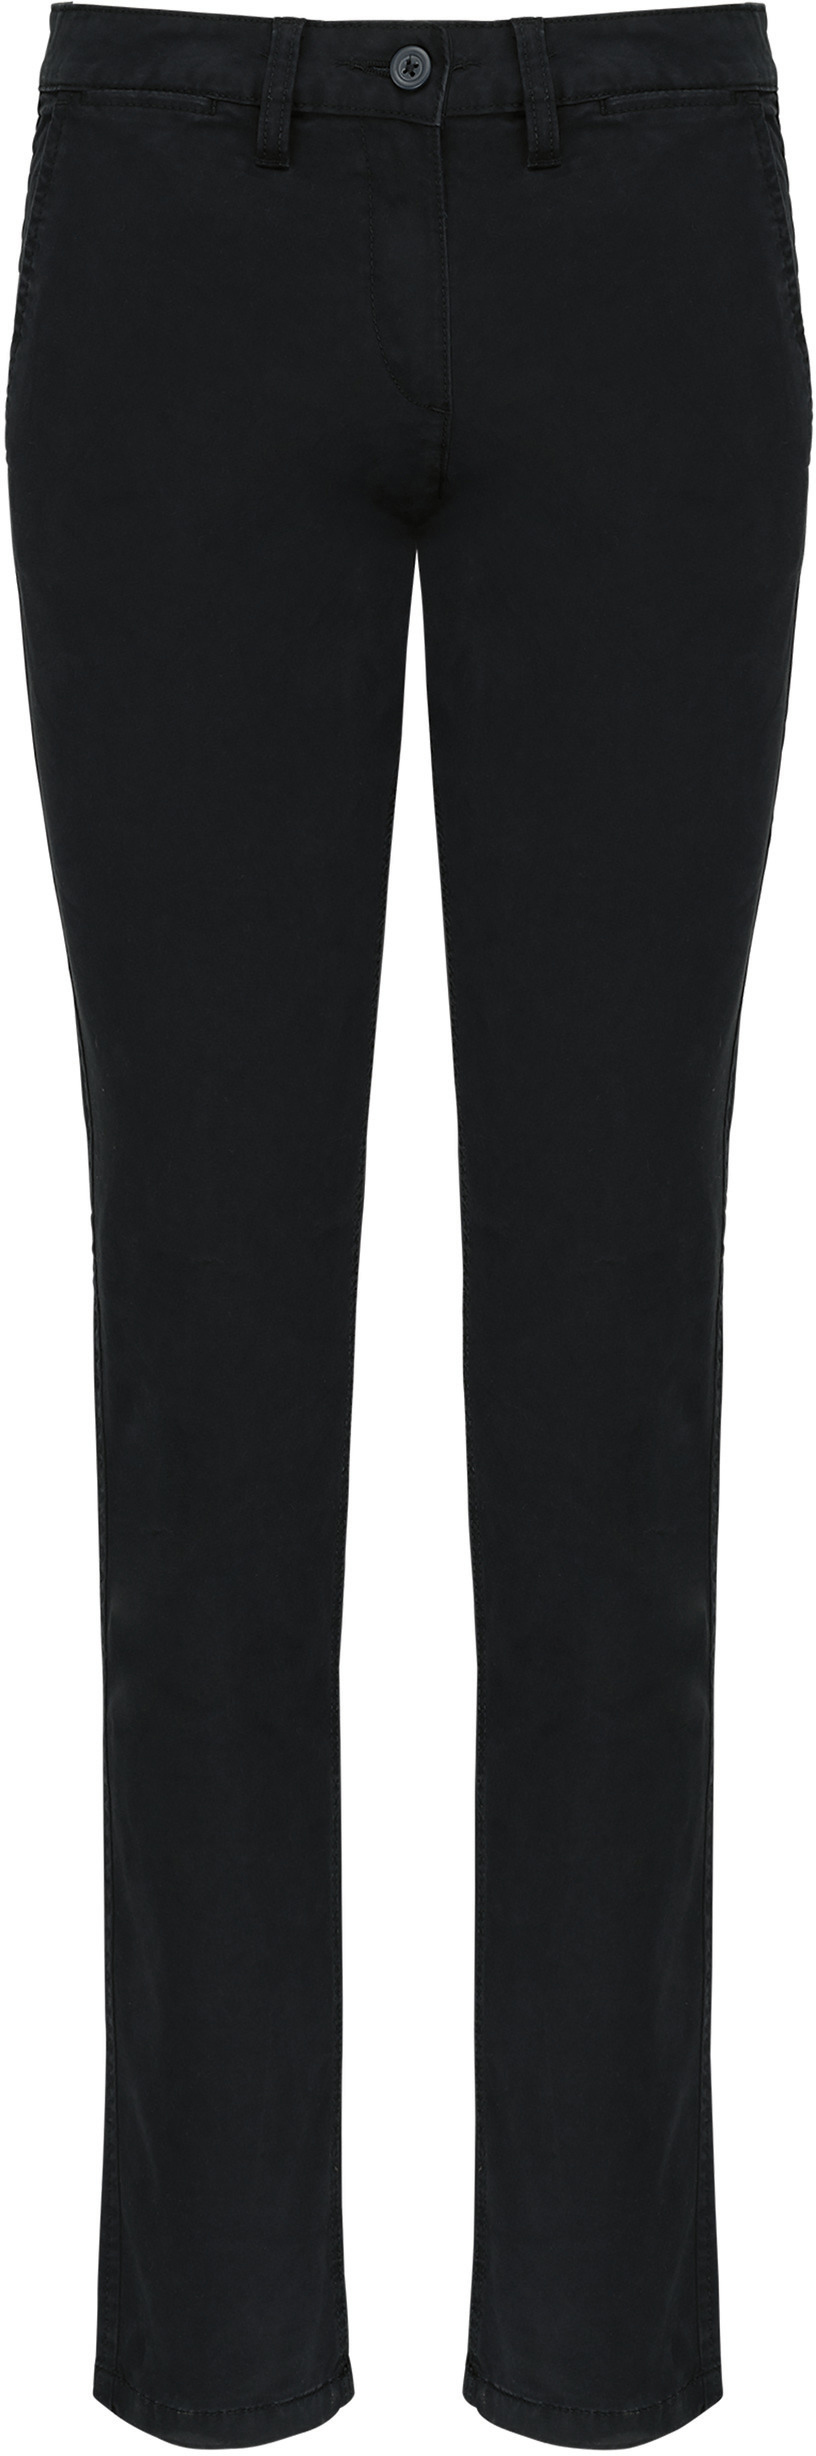 Dámské kalhoty CHINO K741 Barva: černá, Velikost: 46